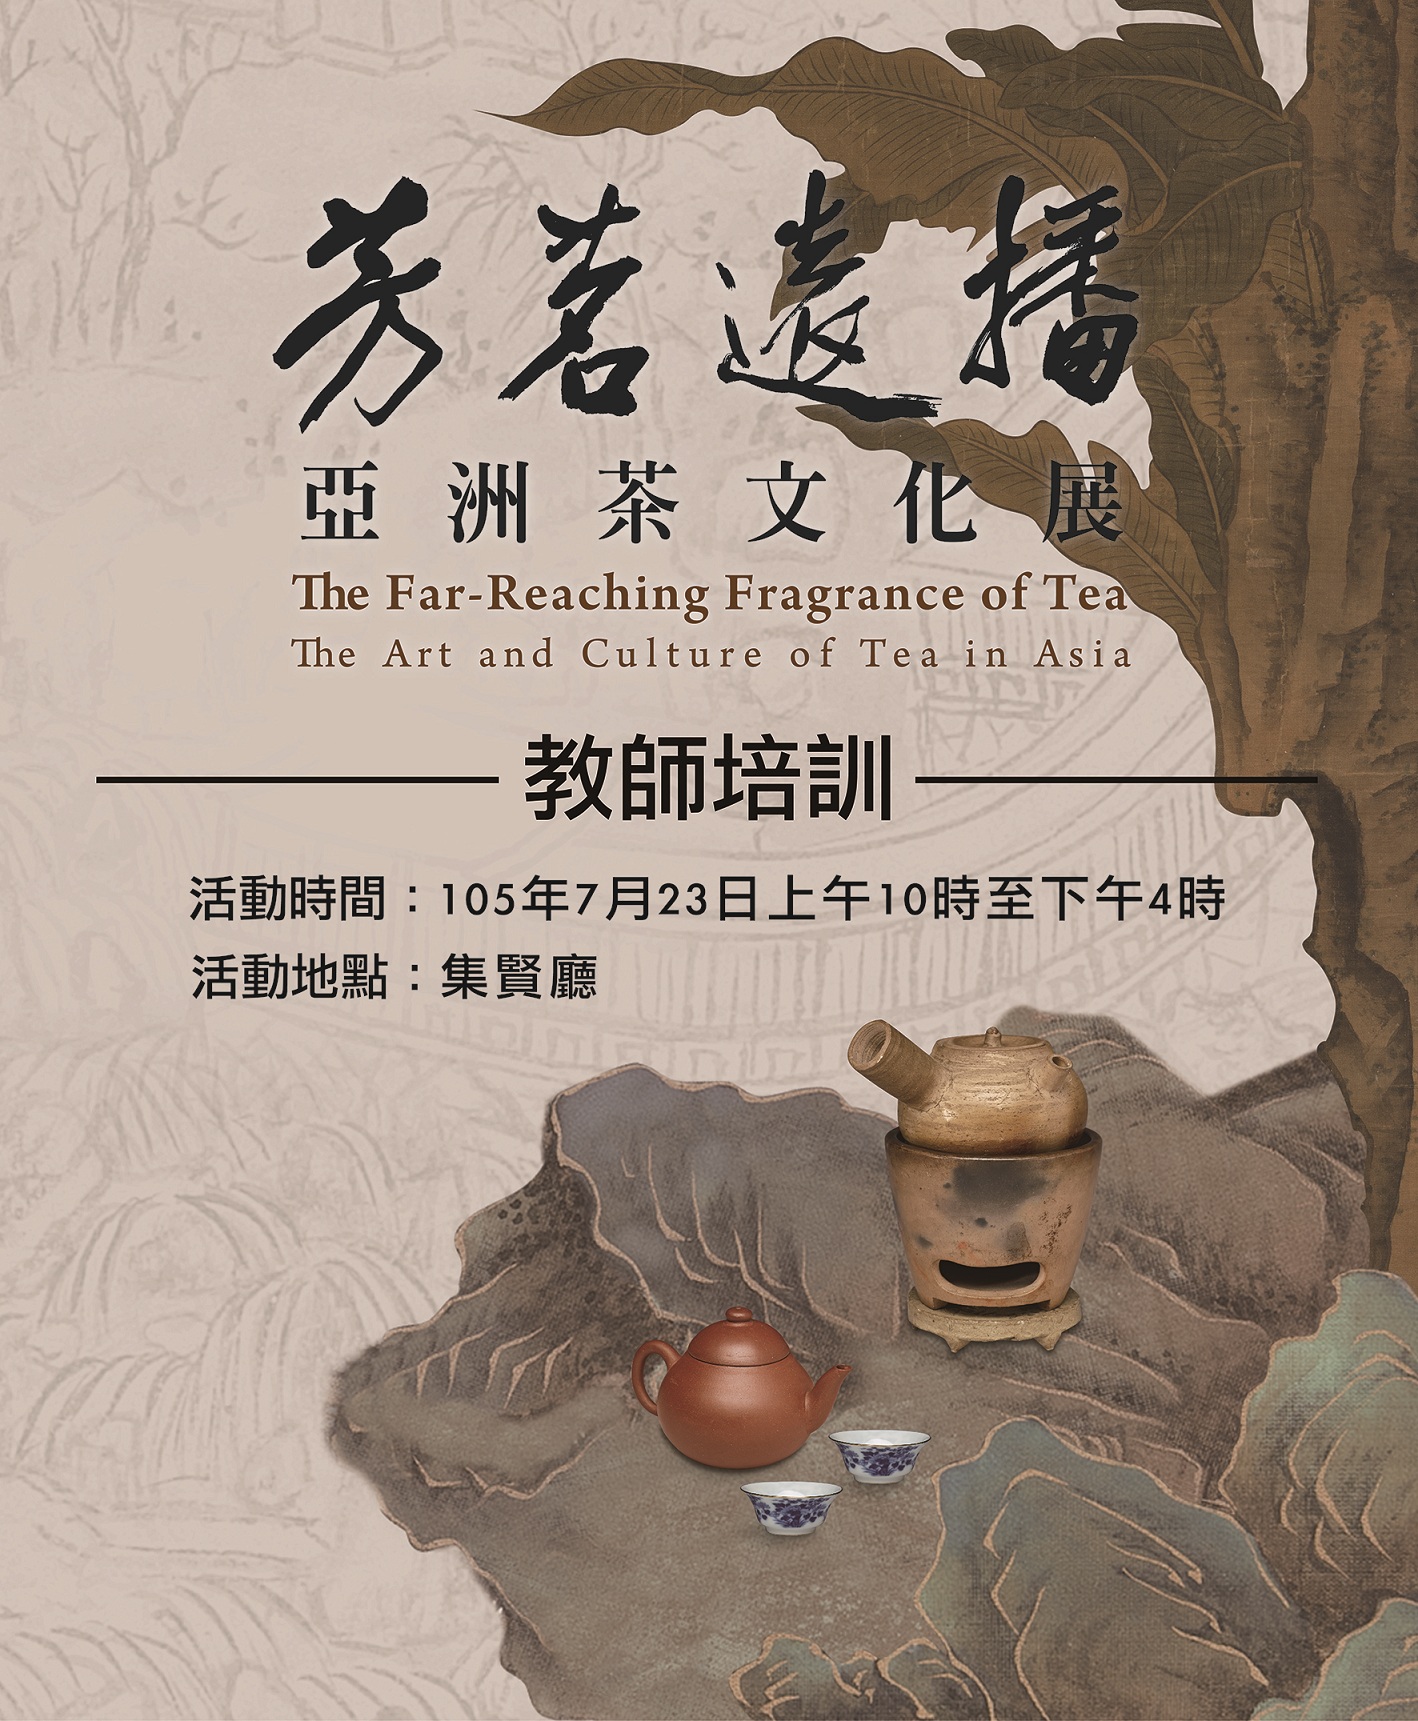 「芳茗遠播—亞洲茶文化展」教師培訓